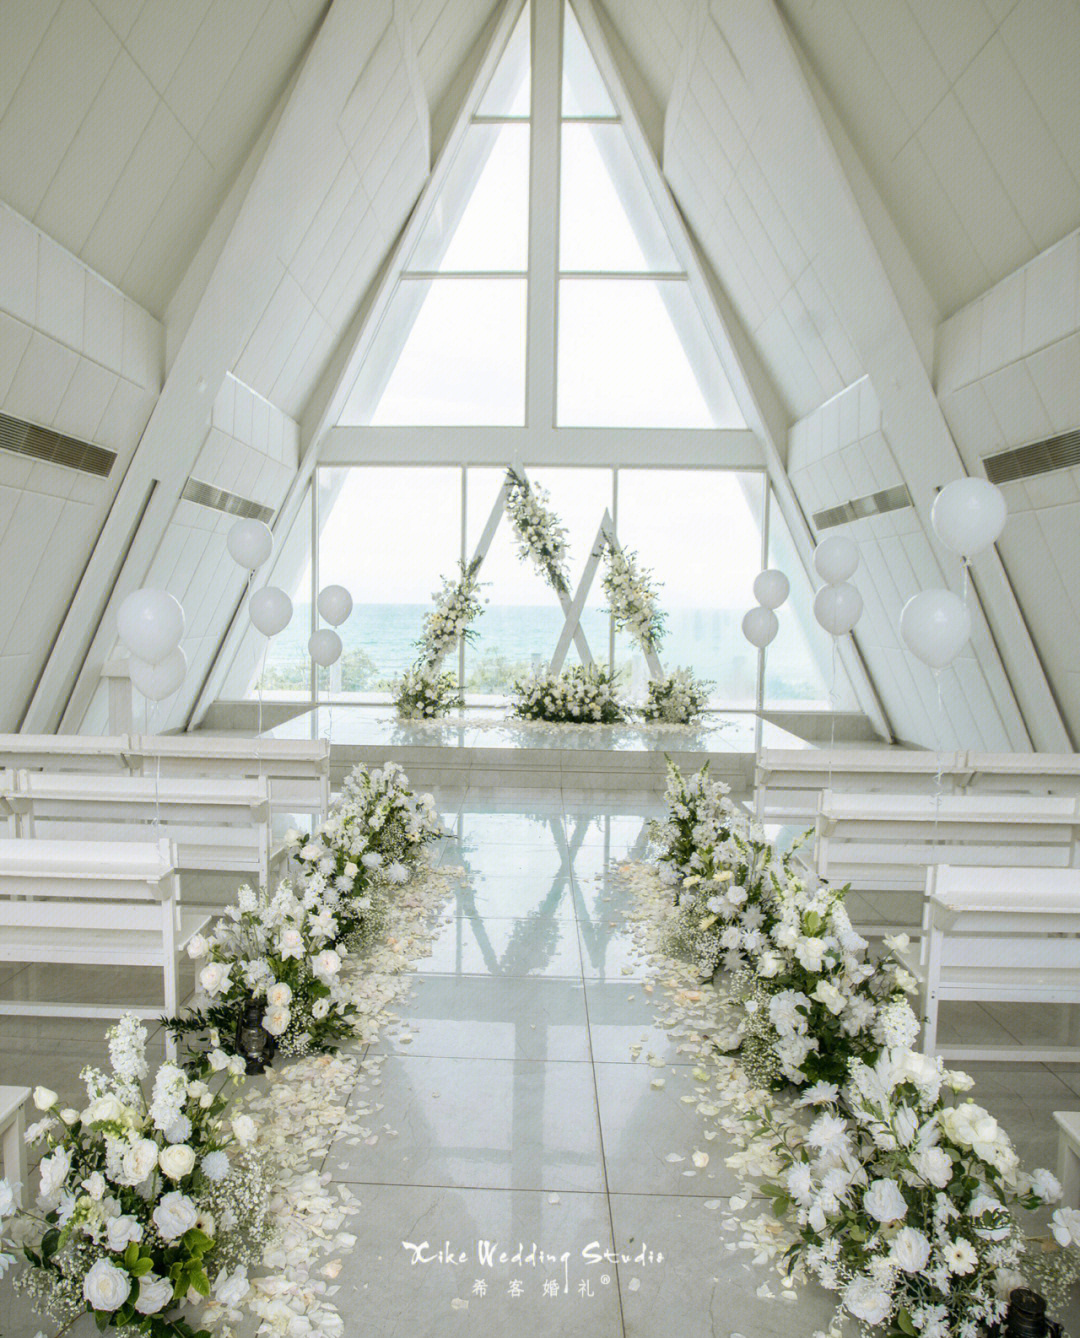 让婚礼更加经典和纯净9592婚礼场地:三亚香水湾君澜教堂95婚礼